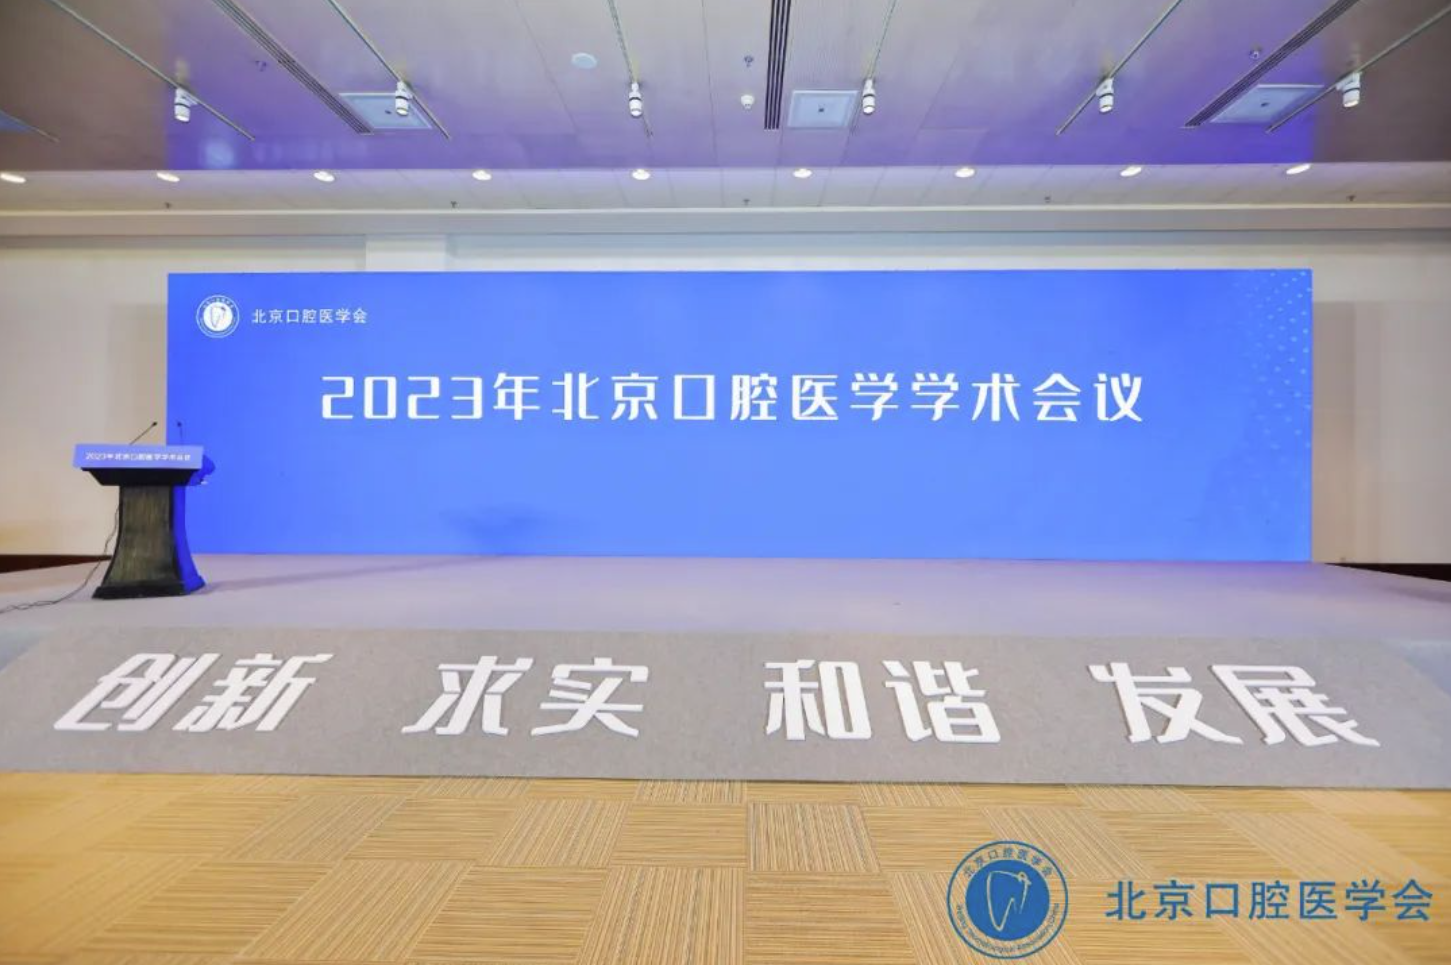 朗视仪器携口腔智能数字化解决方案亮相北京口腔医学学术会议